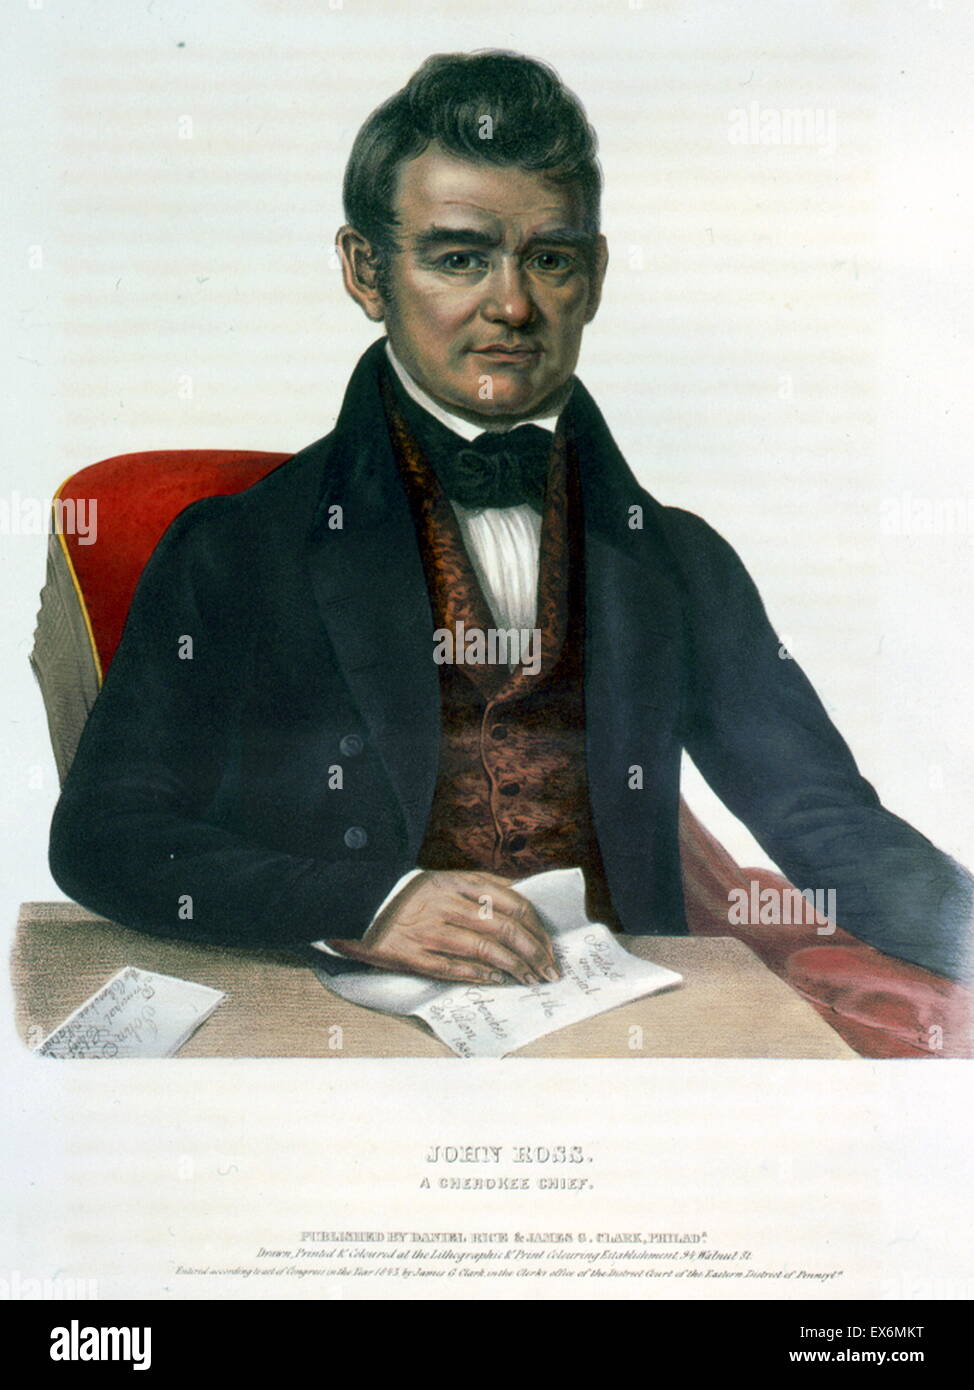 John Ross, ein Cherokee-Häuptling, mit rechten Hand auf dem Papier, die besagt, "Protest und Denkmal der Cherokee Nation Sept. 1836". Die Cherokees sind ein Indianerstamm heimisch in den südöstlichen Staaten von Amerika. Stockfoto